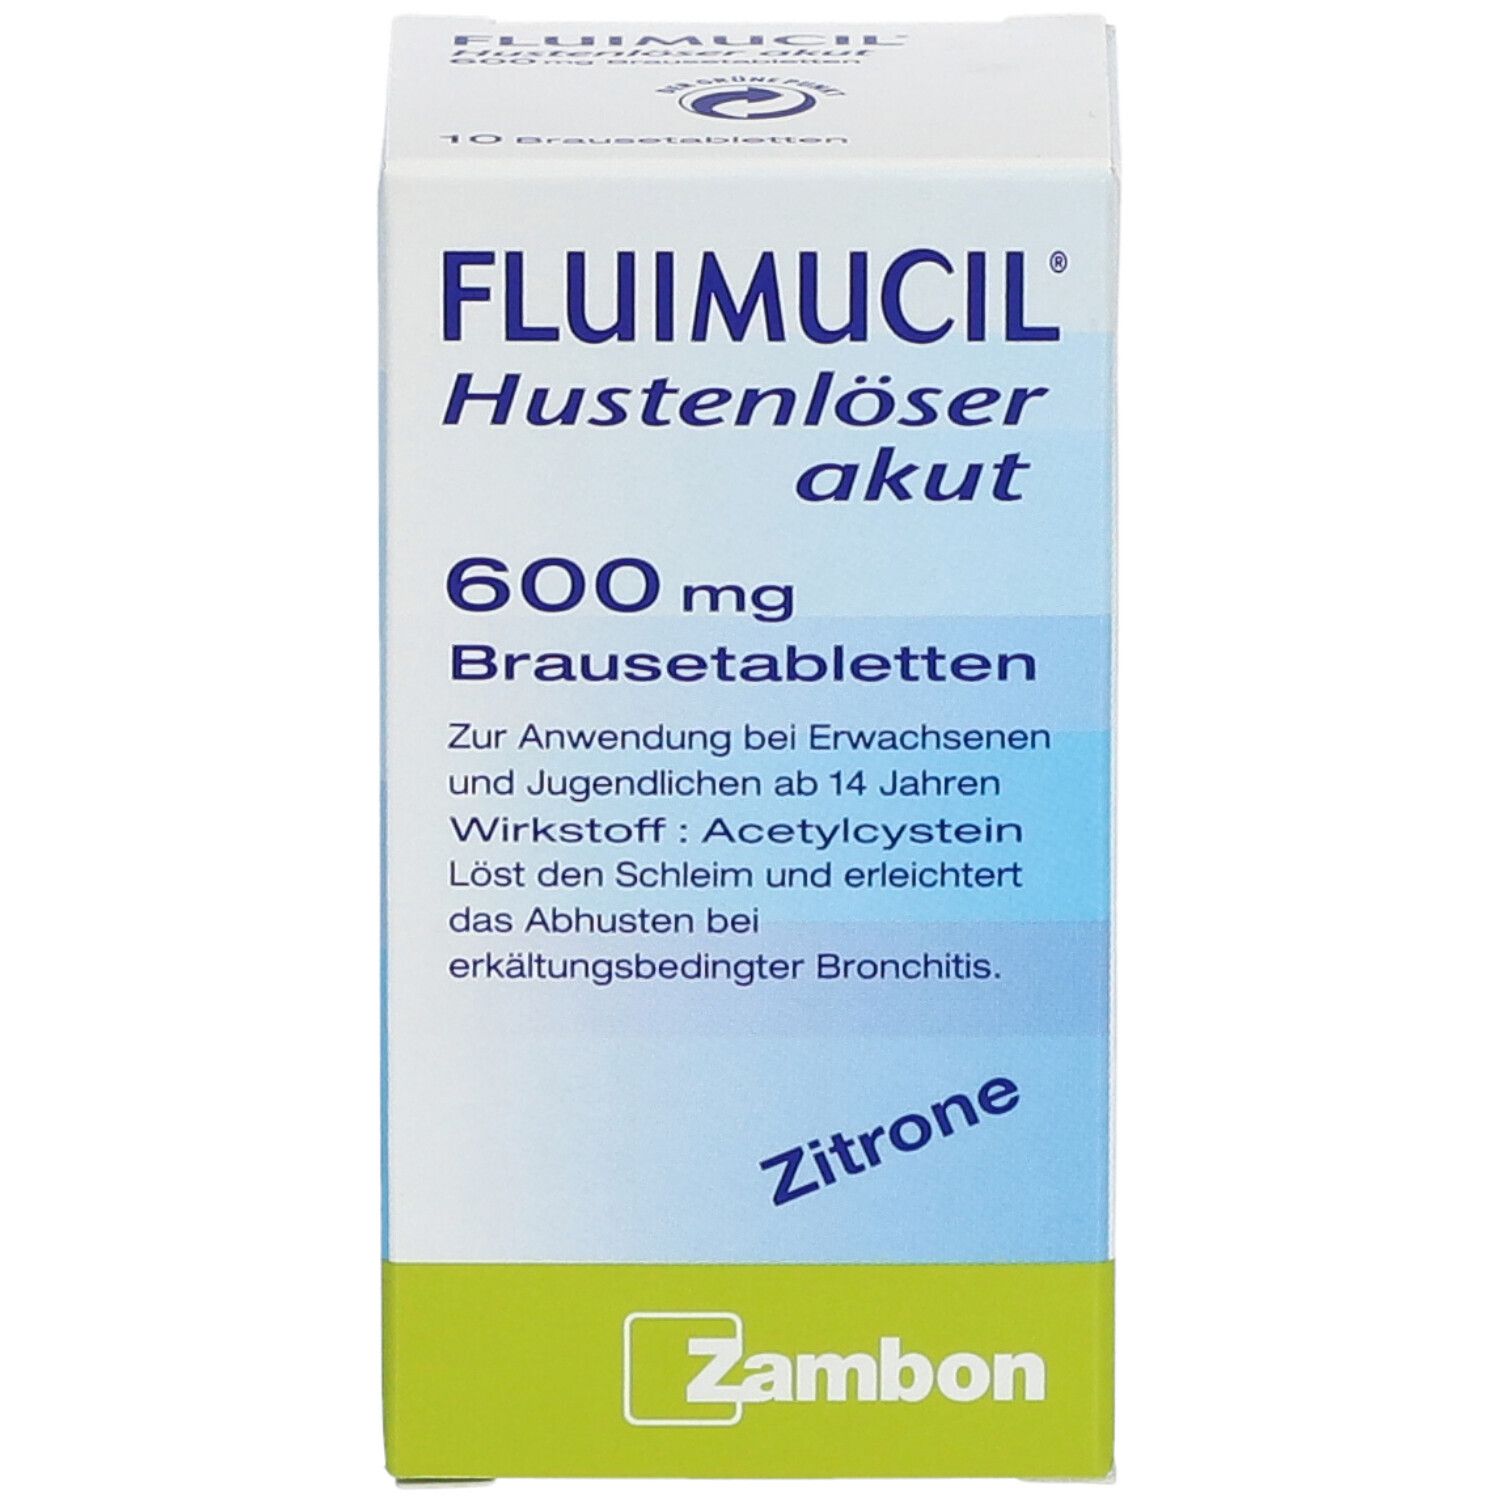 FLUIMUCIL® Hustenlöser akut 600 Brausetabletten